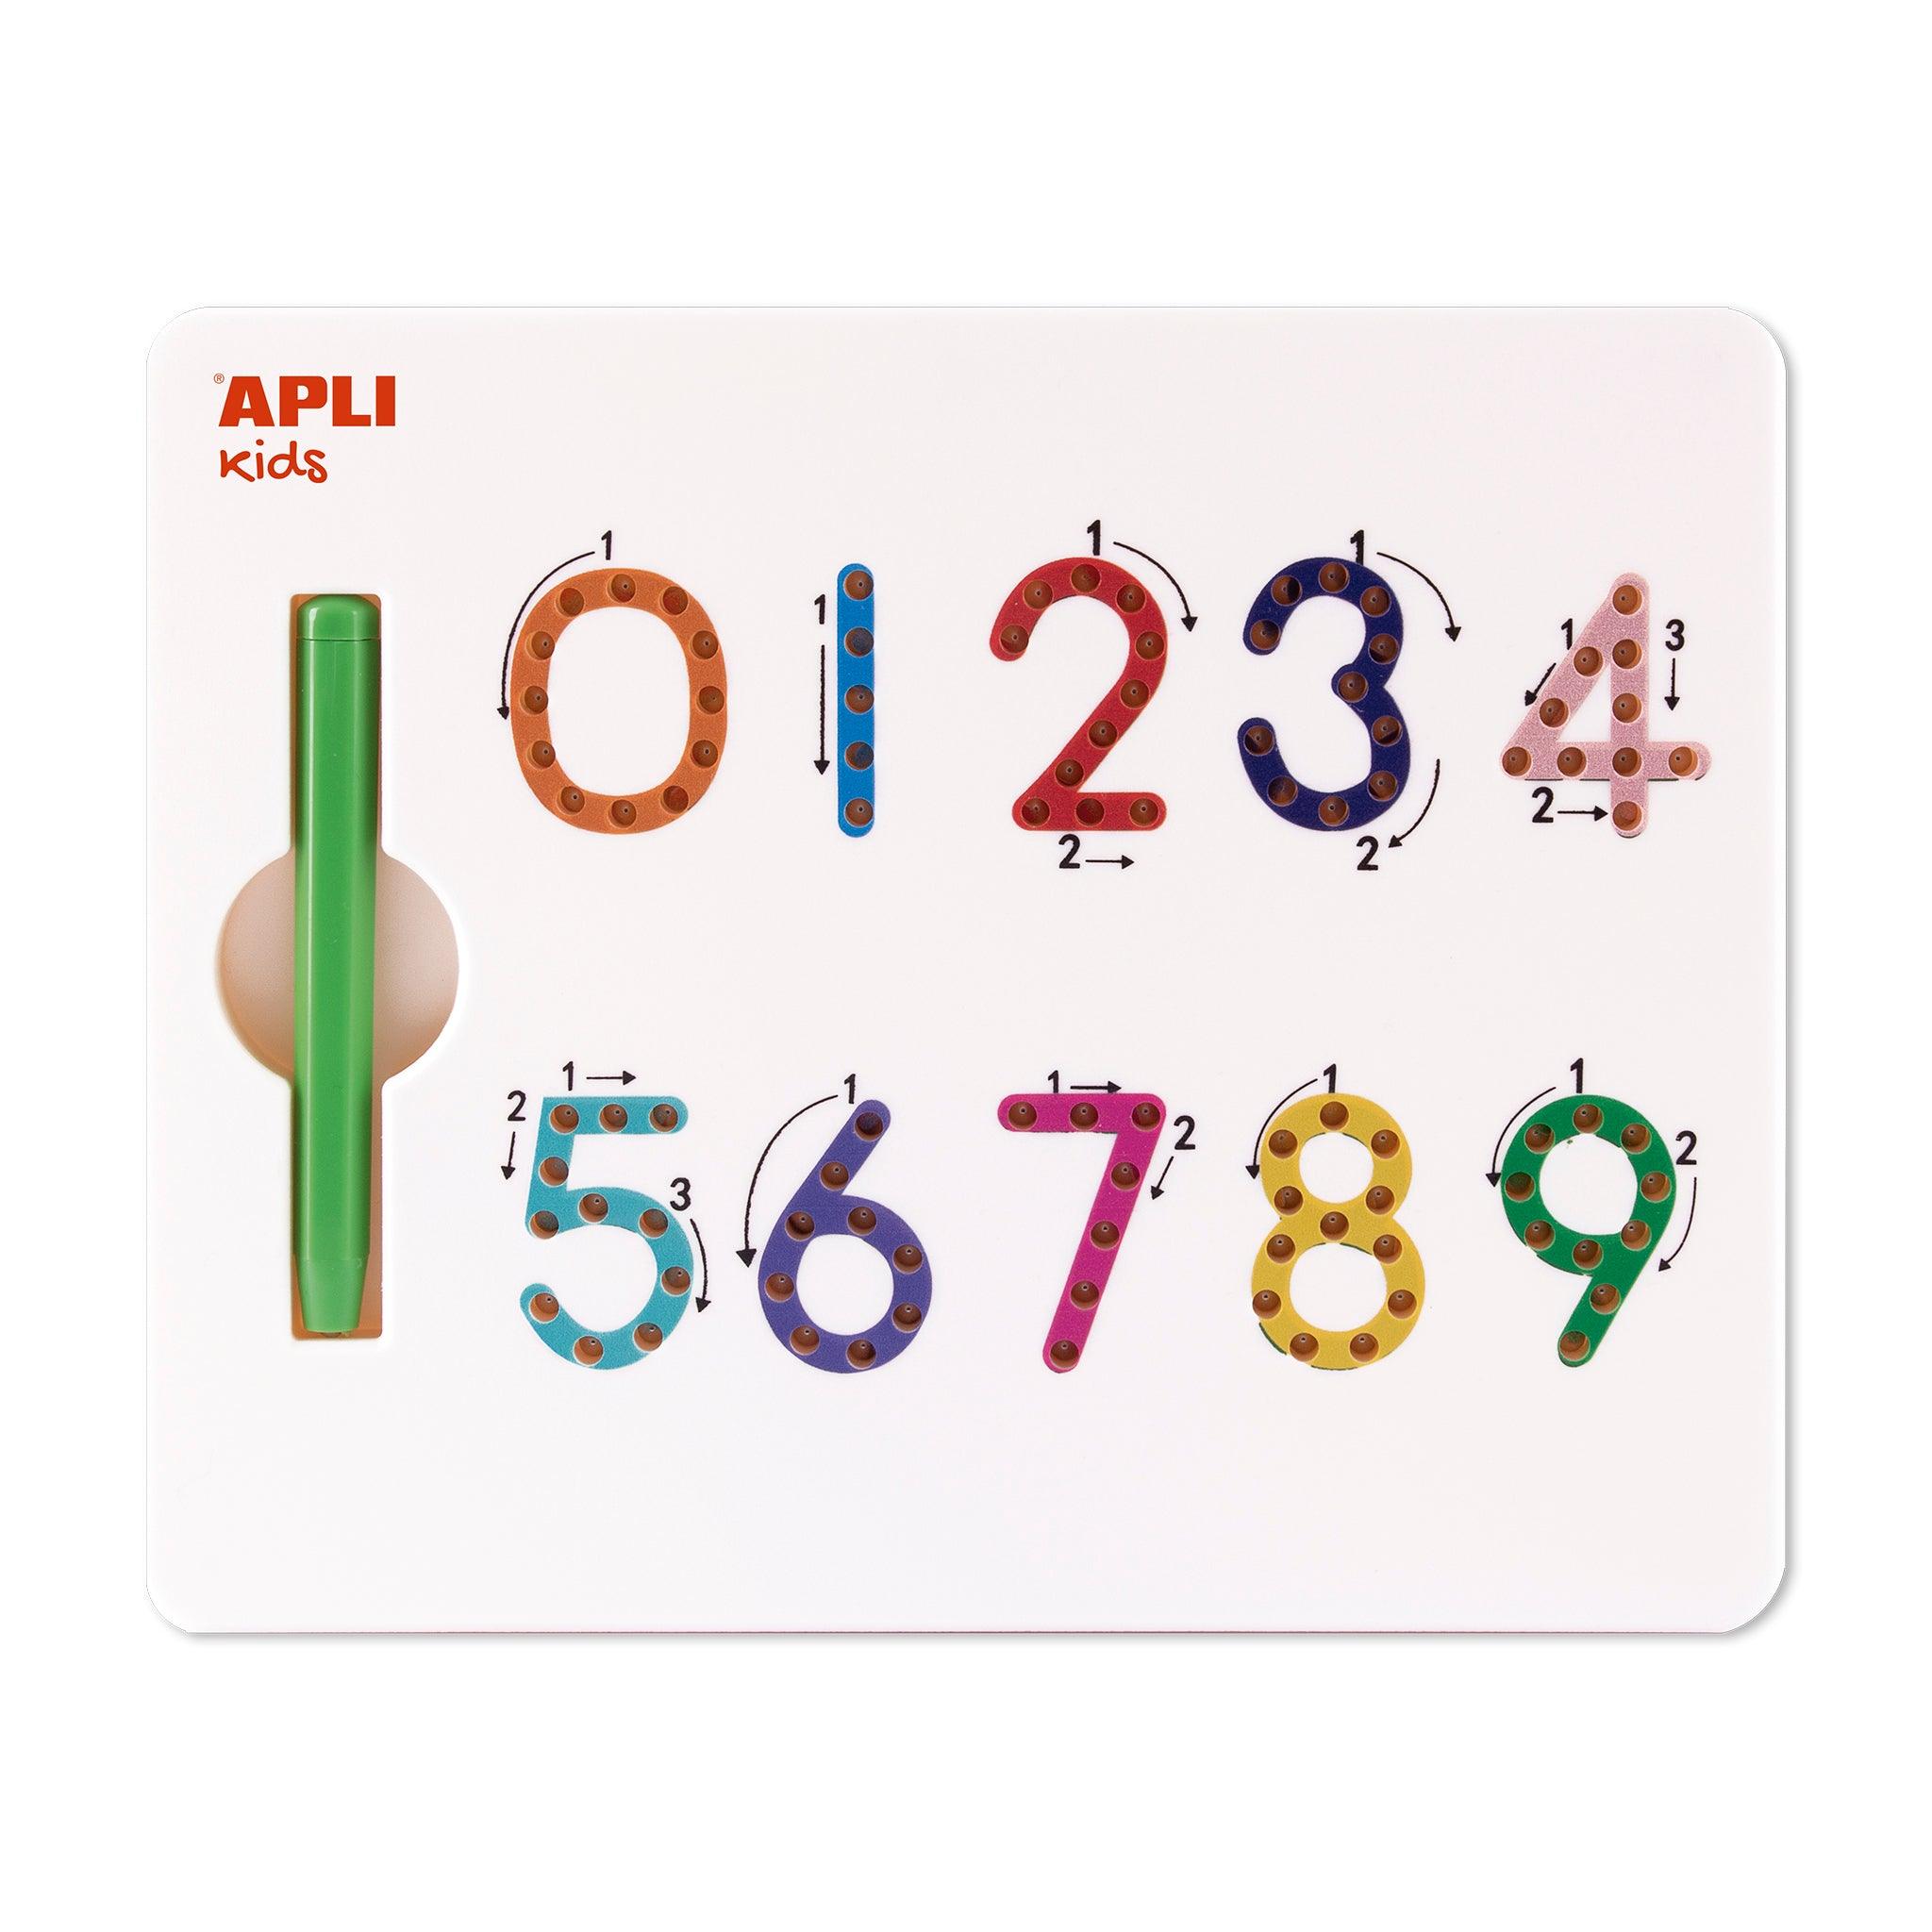 Apli Kids: магнитна дъска за рисуване Numbers 123 Magnetic Numbers